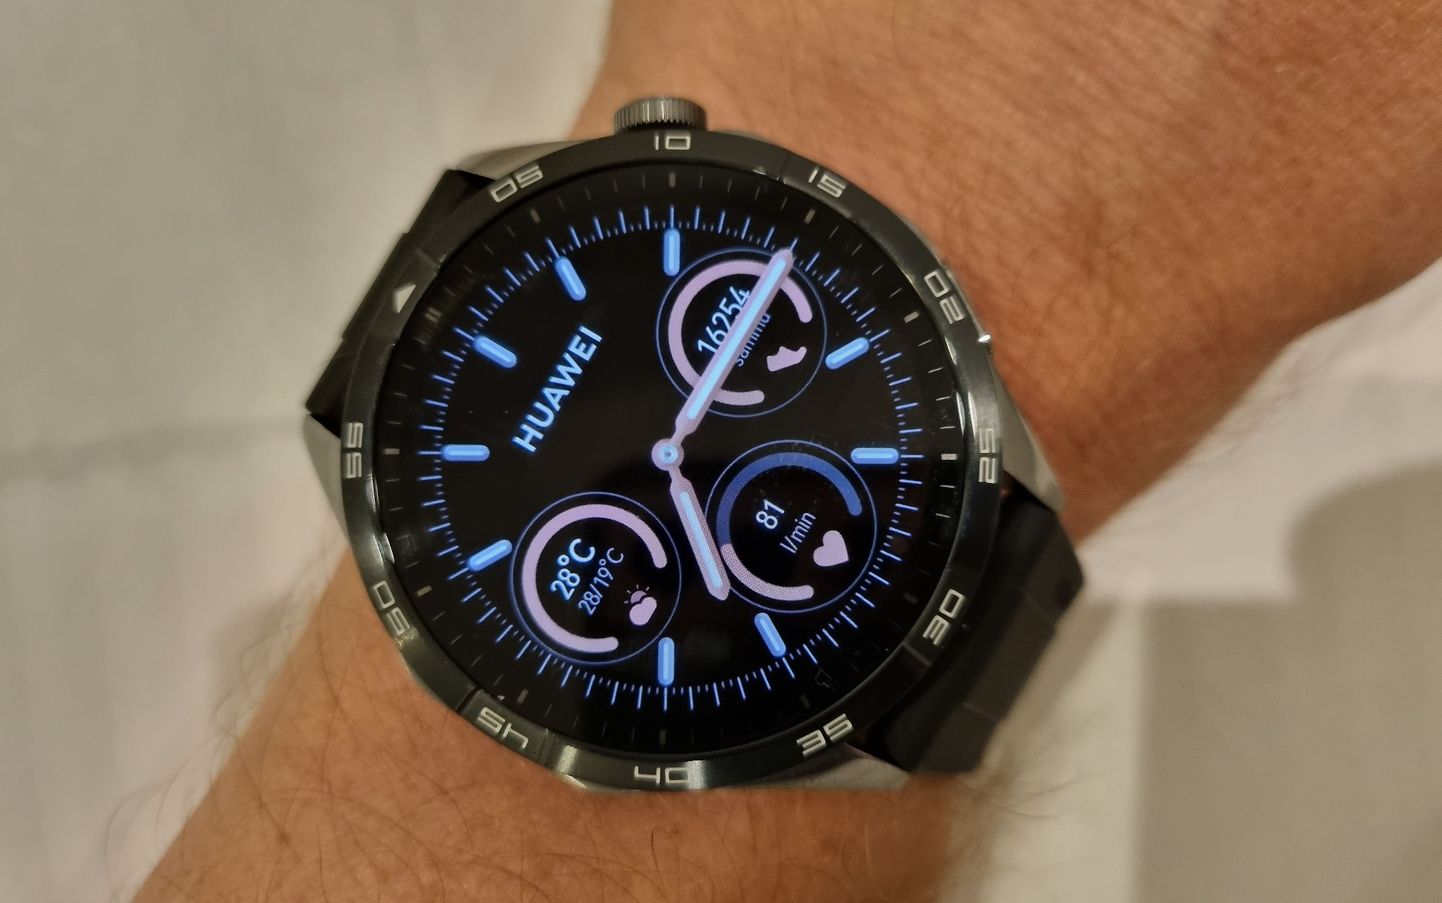 Kas petab ära? Uus Huawei nutikell Watch GT 4 on disainitud samasuguseks nagu traditsioonilised (luksuslikud) käekellad.